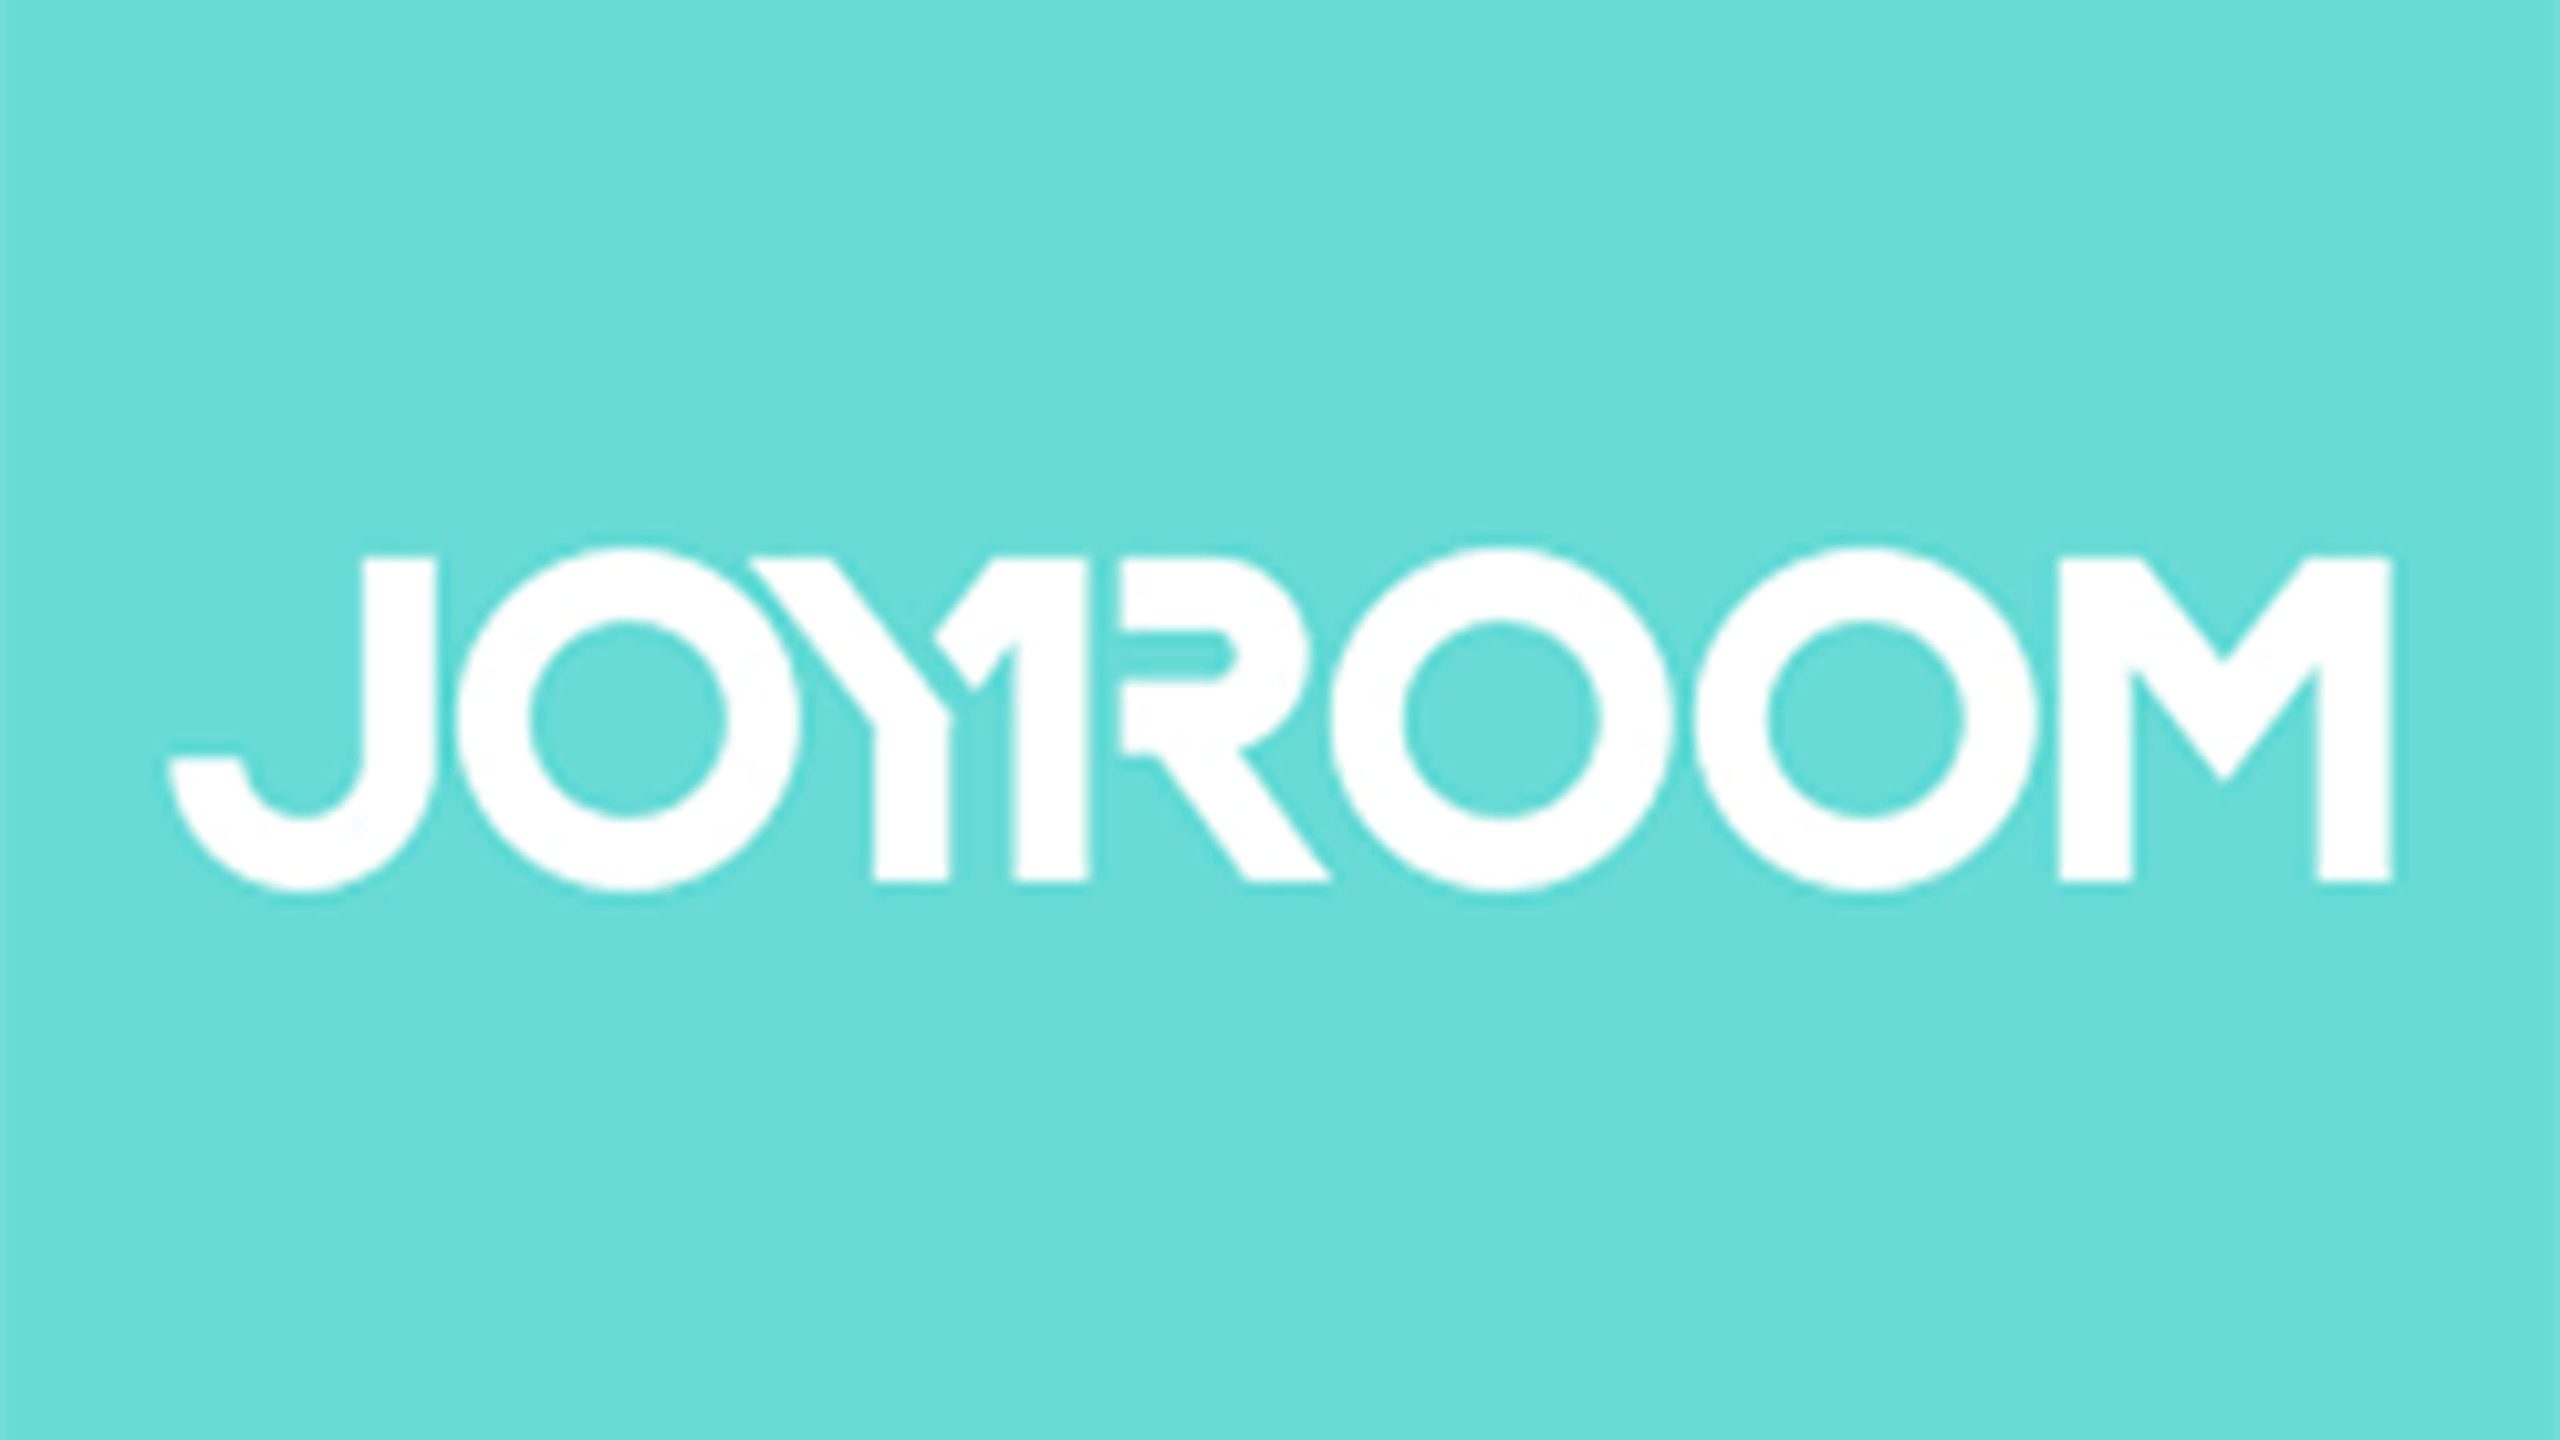 joyroom logo scaled